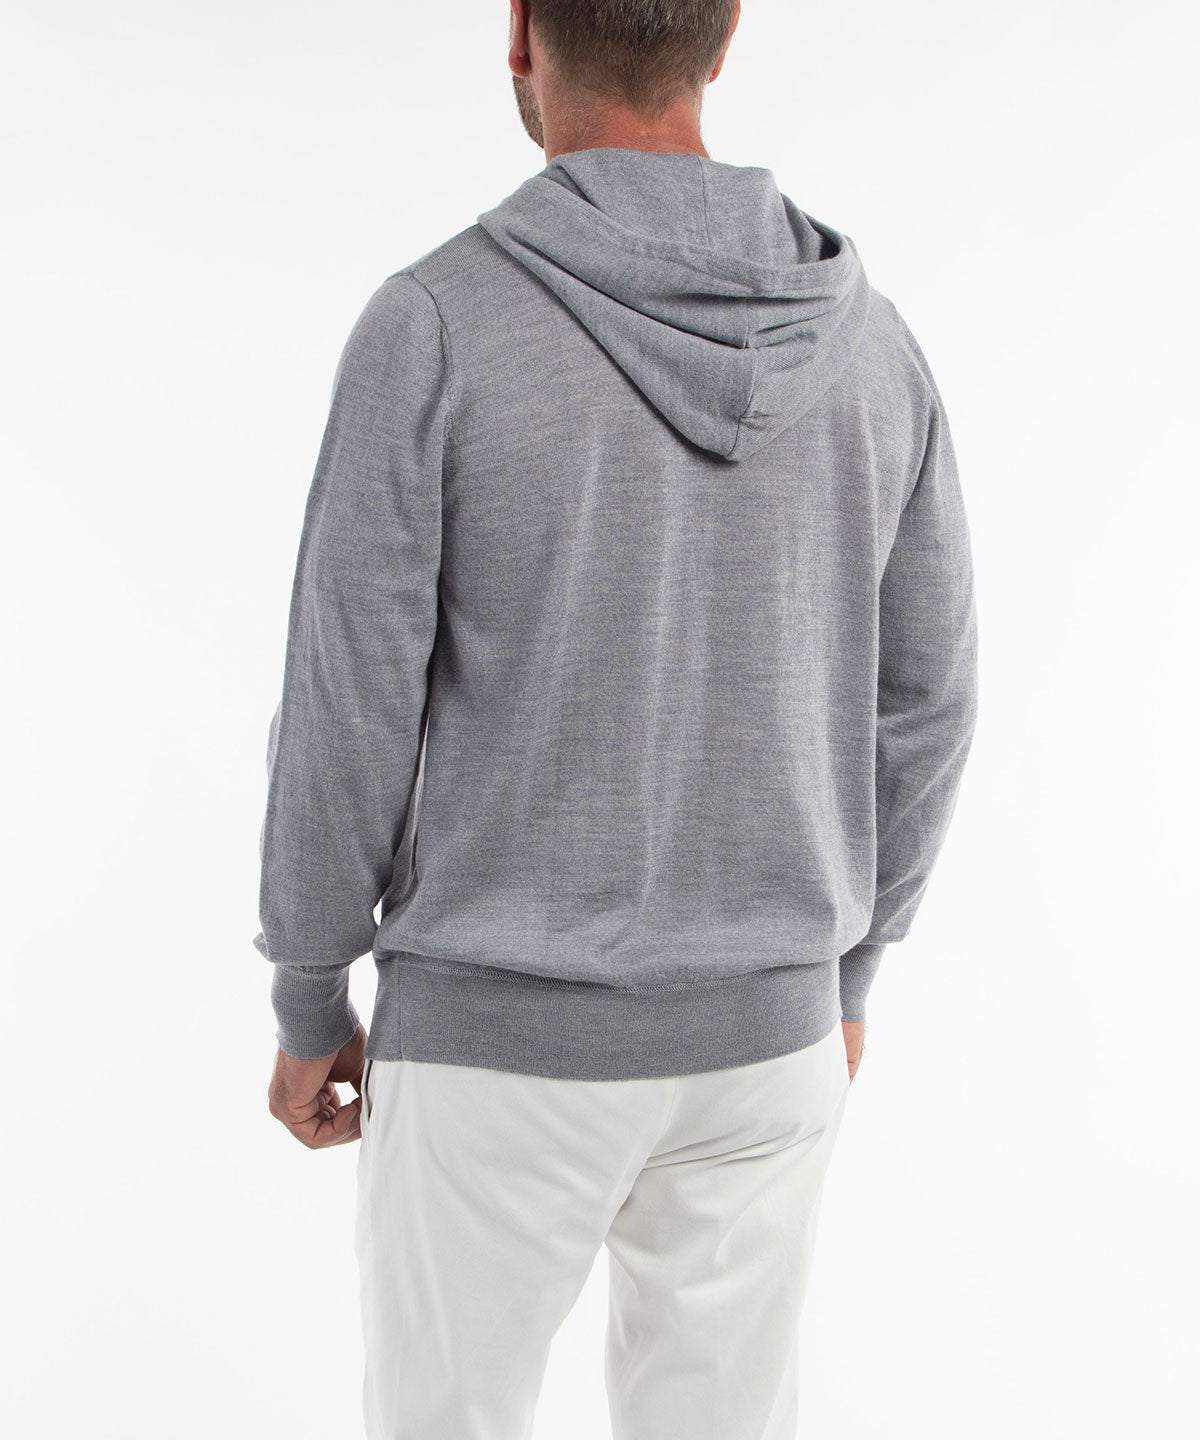 Signature Ultra Light 100% Merino Wool Full-Zip Hoodie